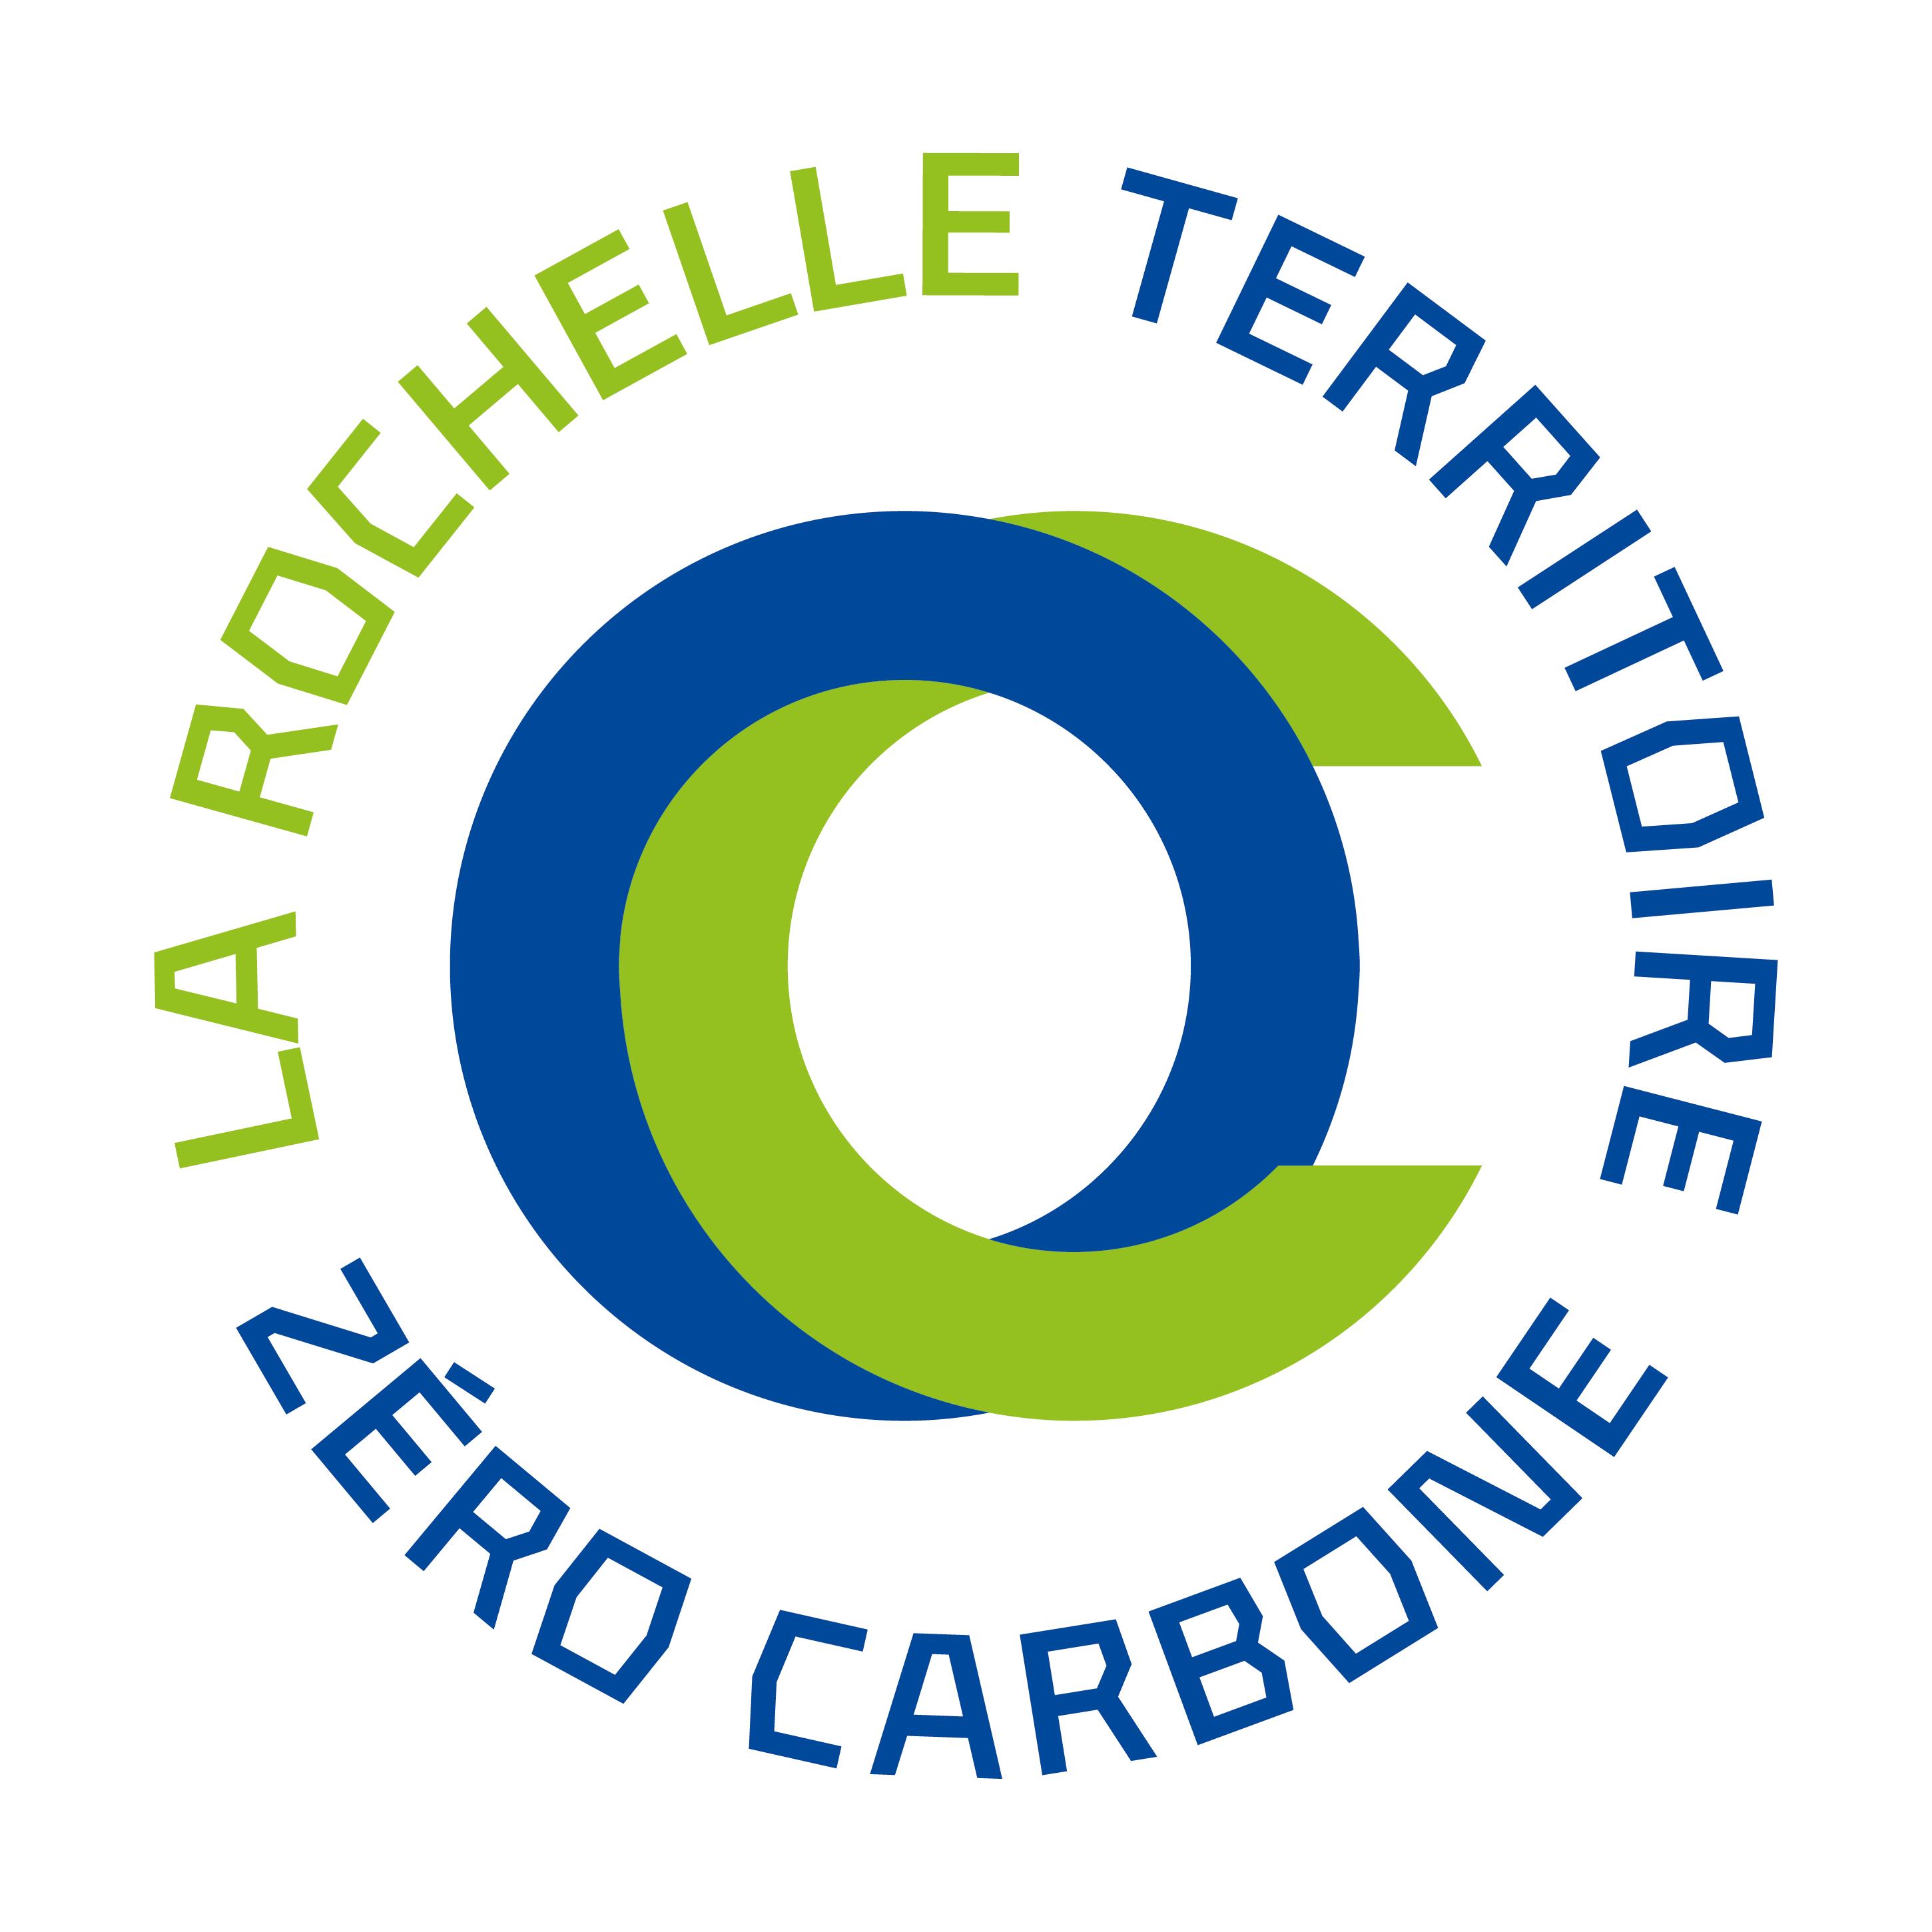 Cellule de coordination La Rochelle Territoire Zéro Carbone